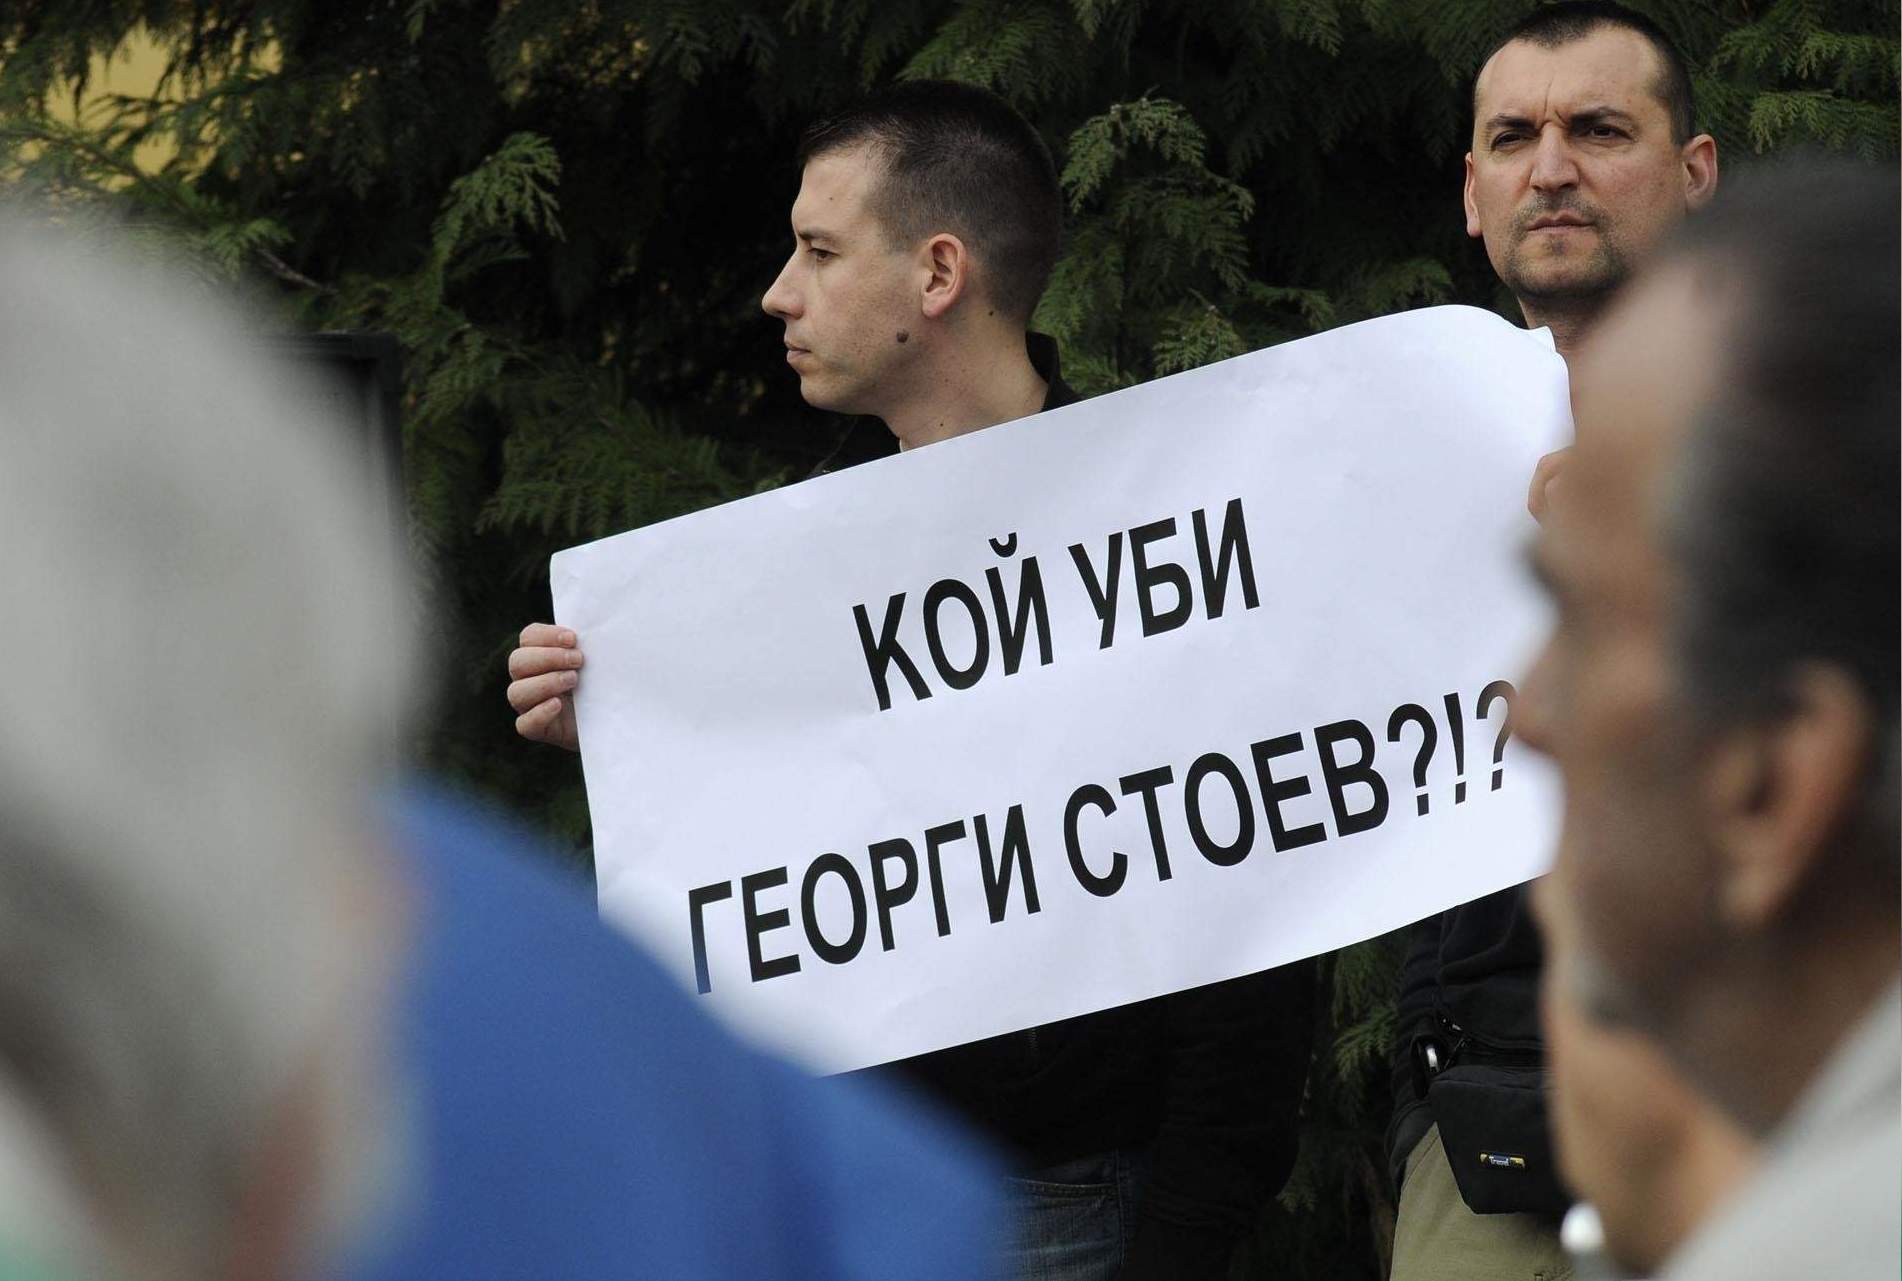 Стоян Трендафилов: Георги Стоев беше убит от чужденци